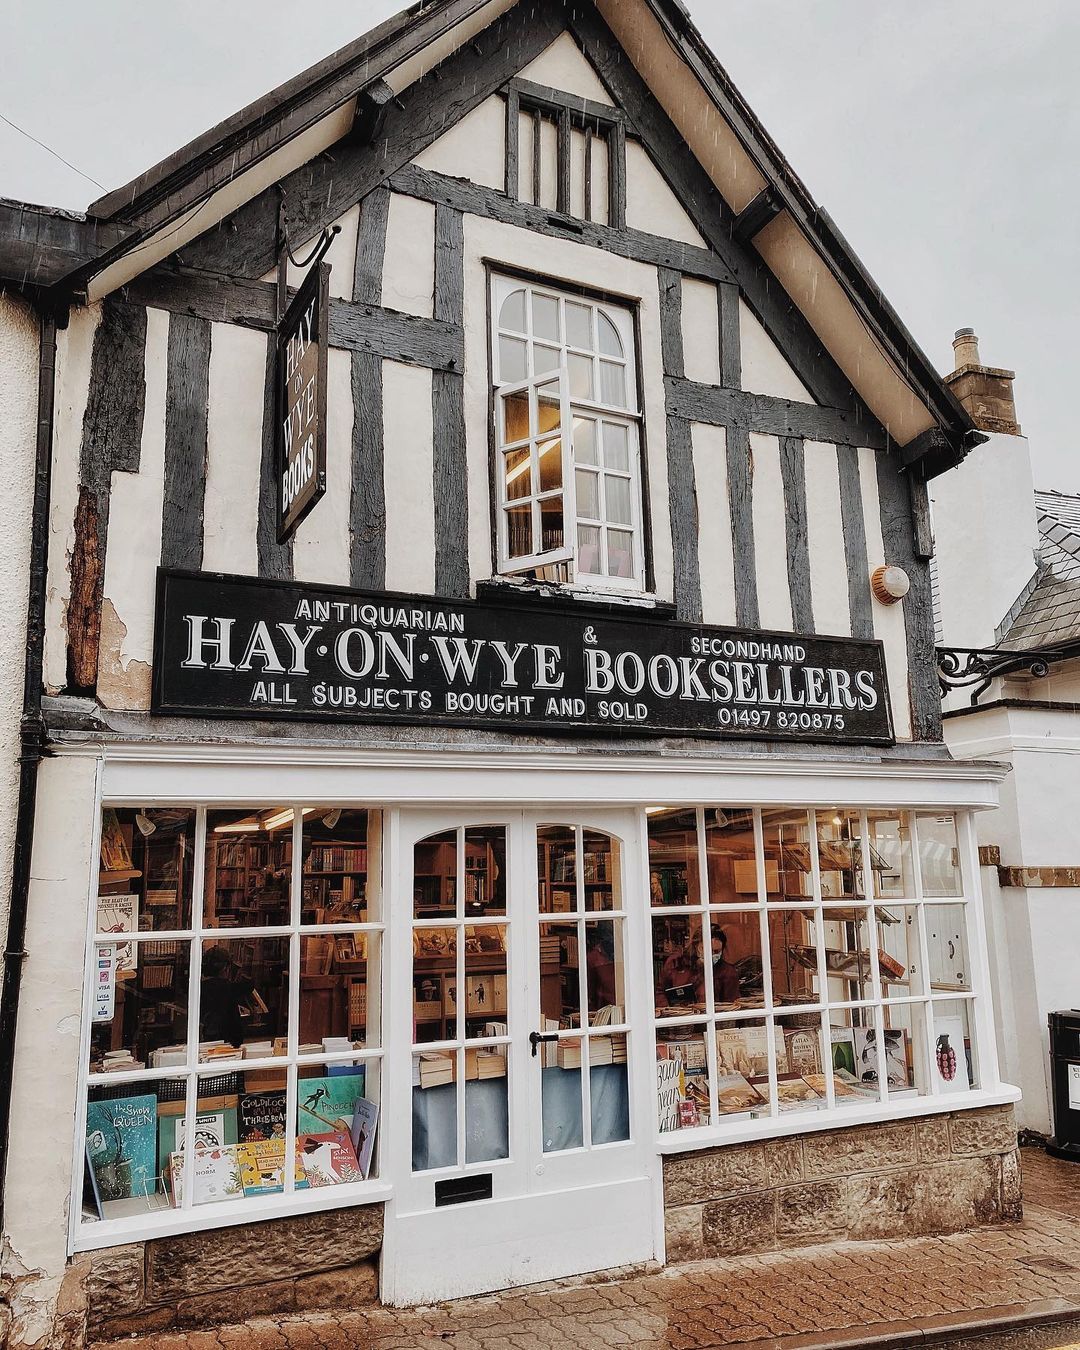 Những hiệu sách cũ tại thị trấn Hay-on-Wye. Ảnh:atasteforliterature